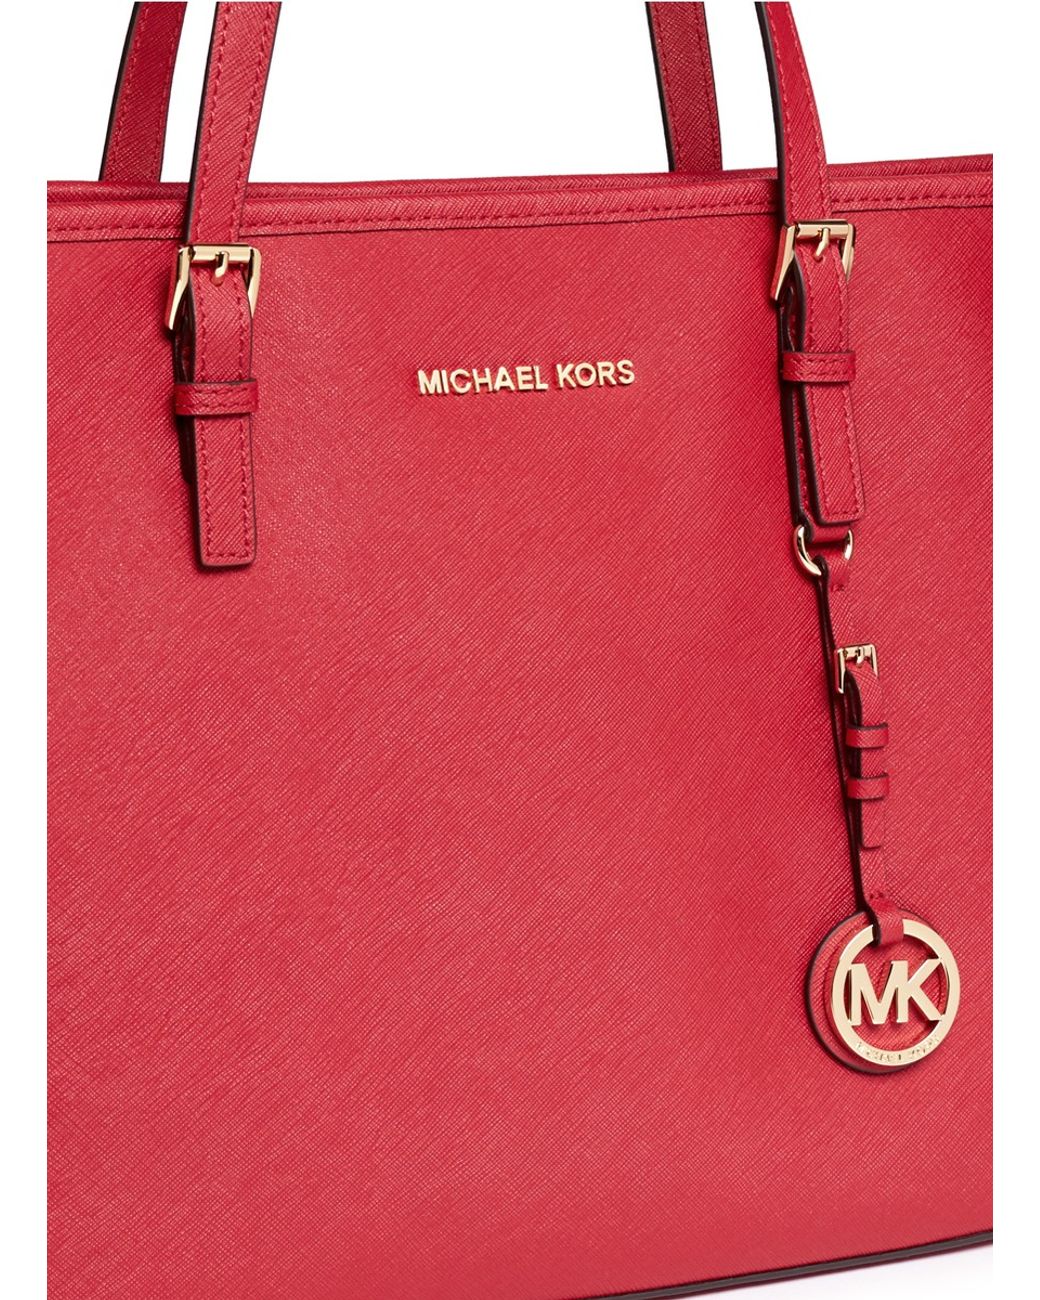 Michael Kors Jet Set Travel Red Shoulder Bag - clothing